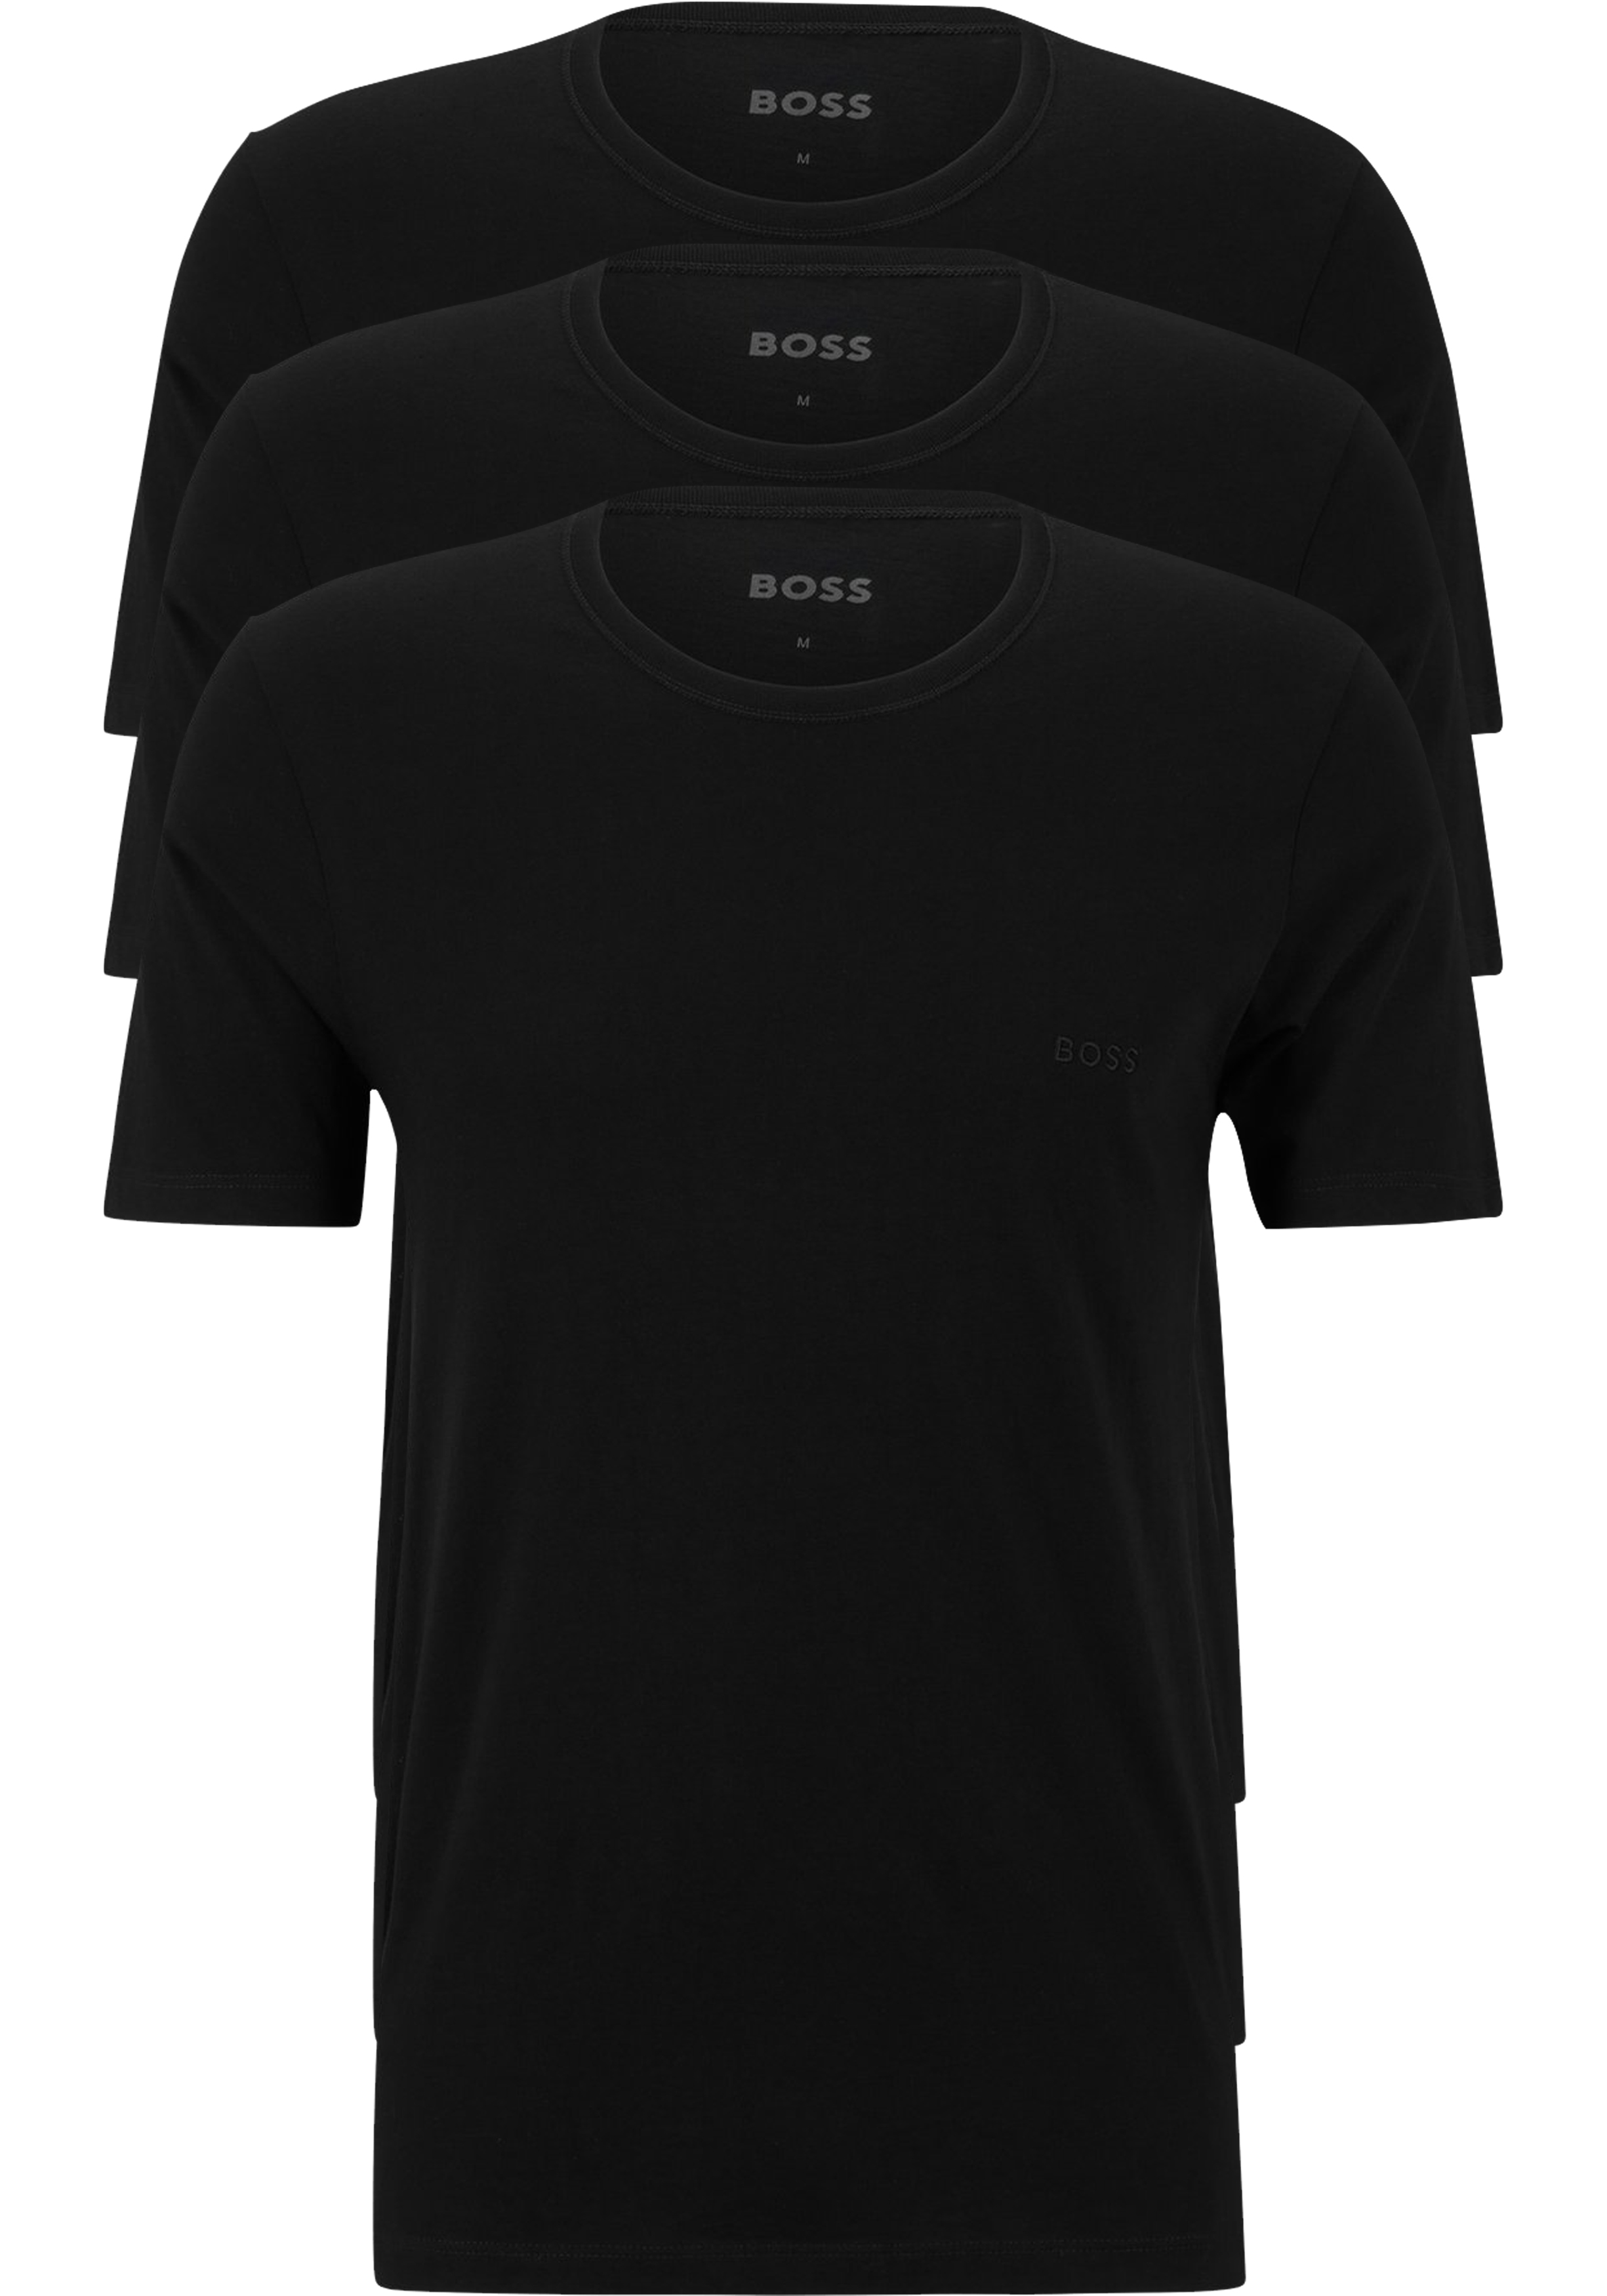 ondernemer stof in de ogen gooien Premisse HUGO BOSS Classic T-shirts regular fit (3-pack), heren T-shirts O-hals,...  - Shop de nieuwste voorjaarsmode